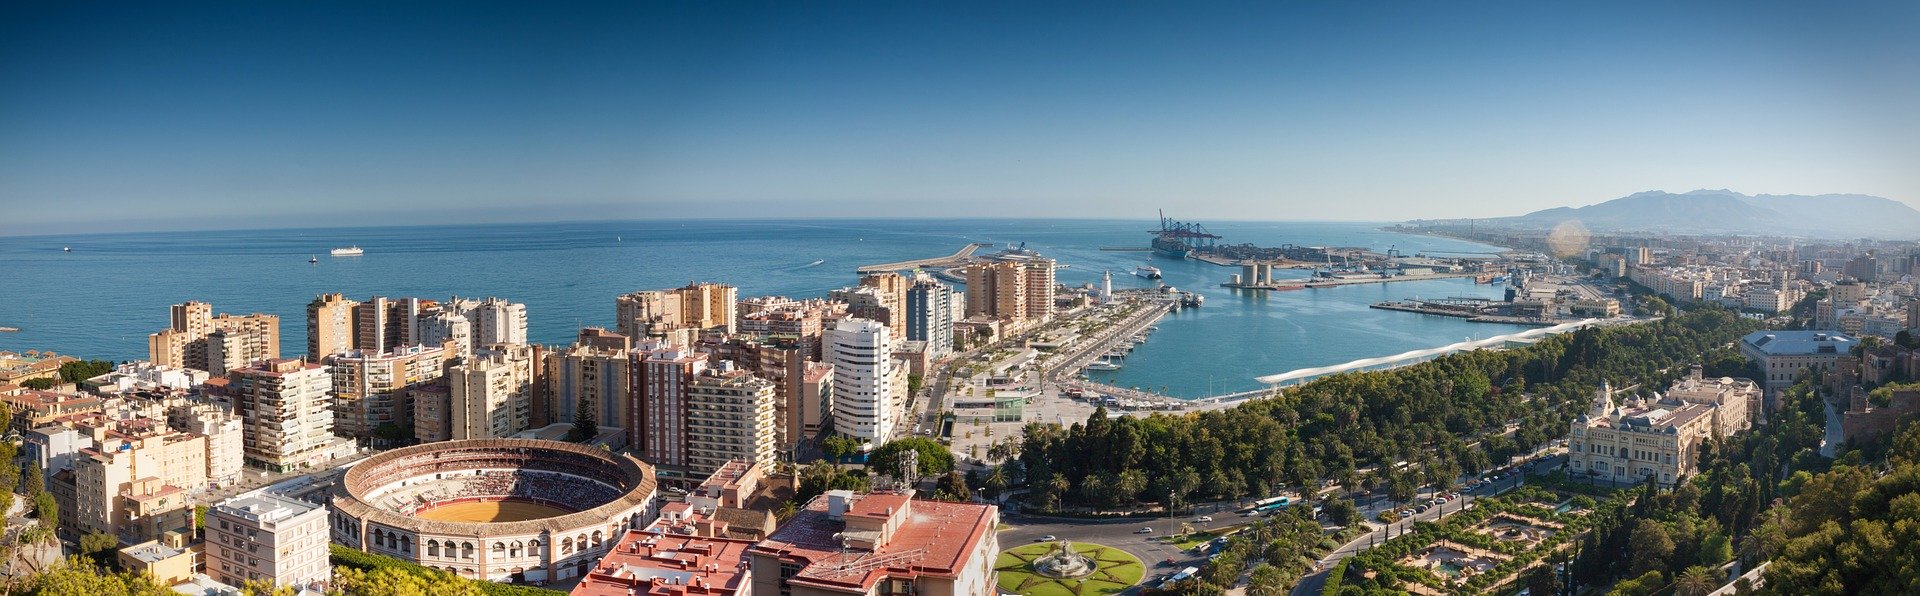 Viajes para viajeros singles y solteros a Malaga 